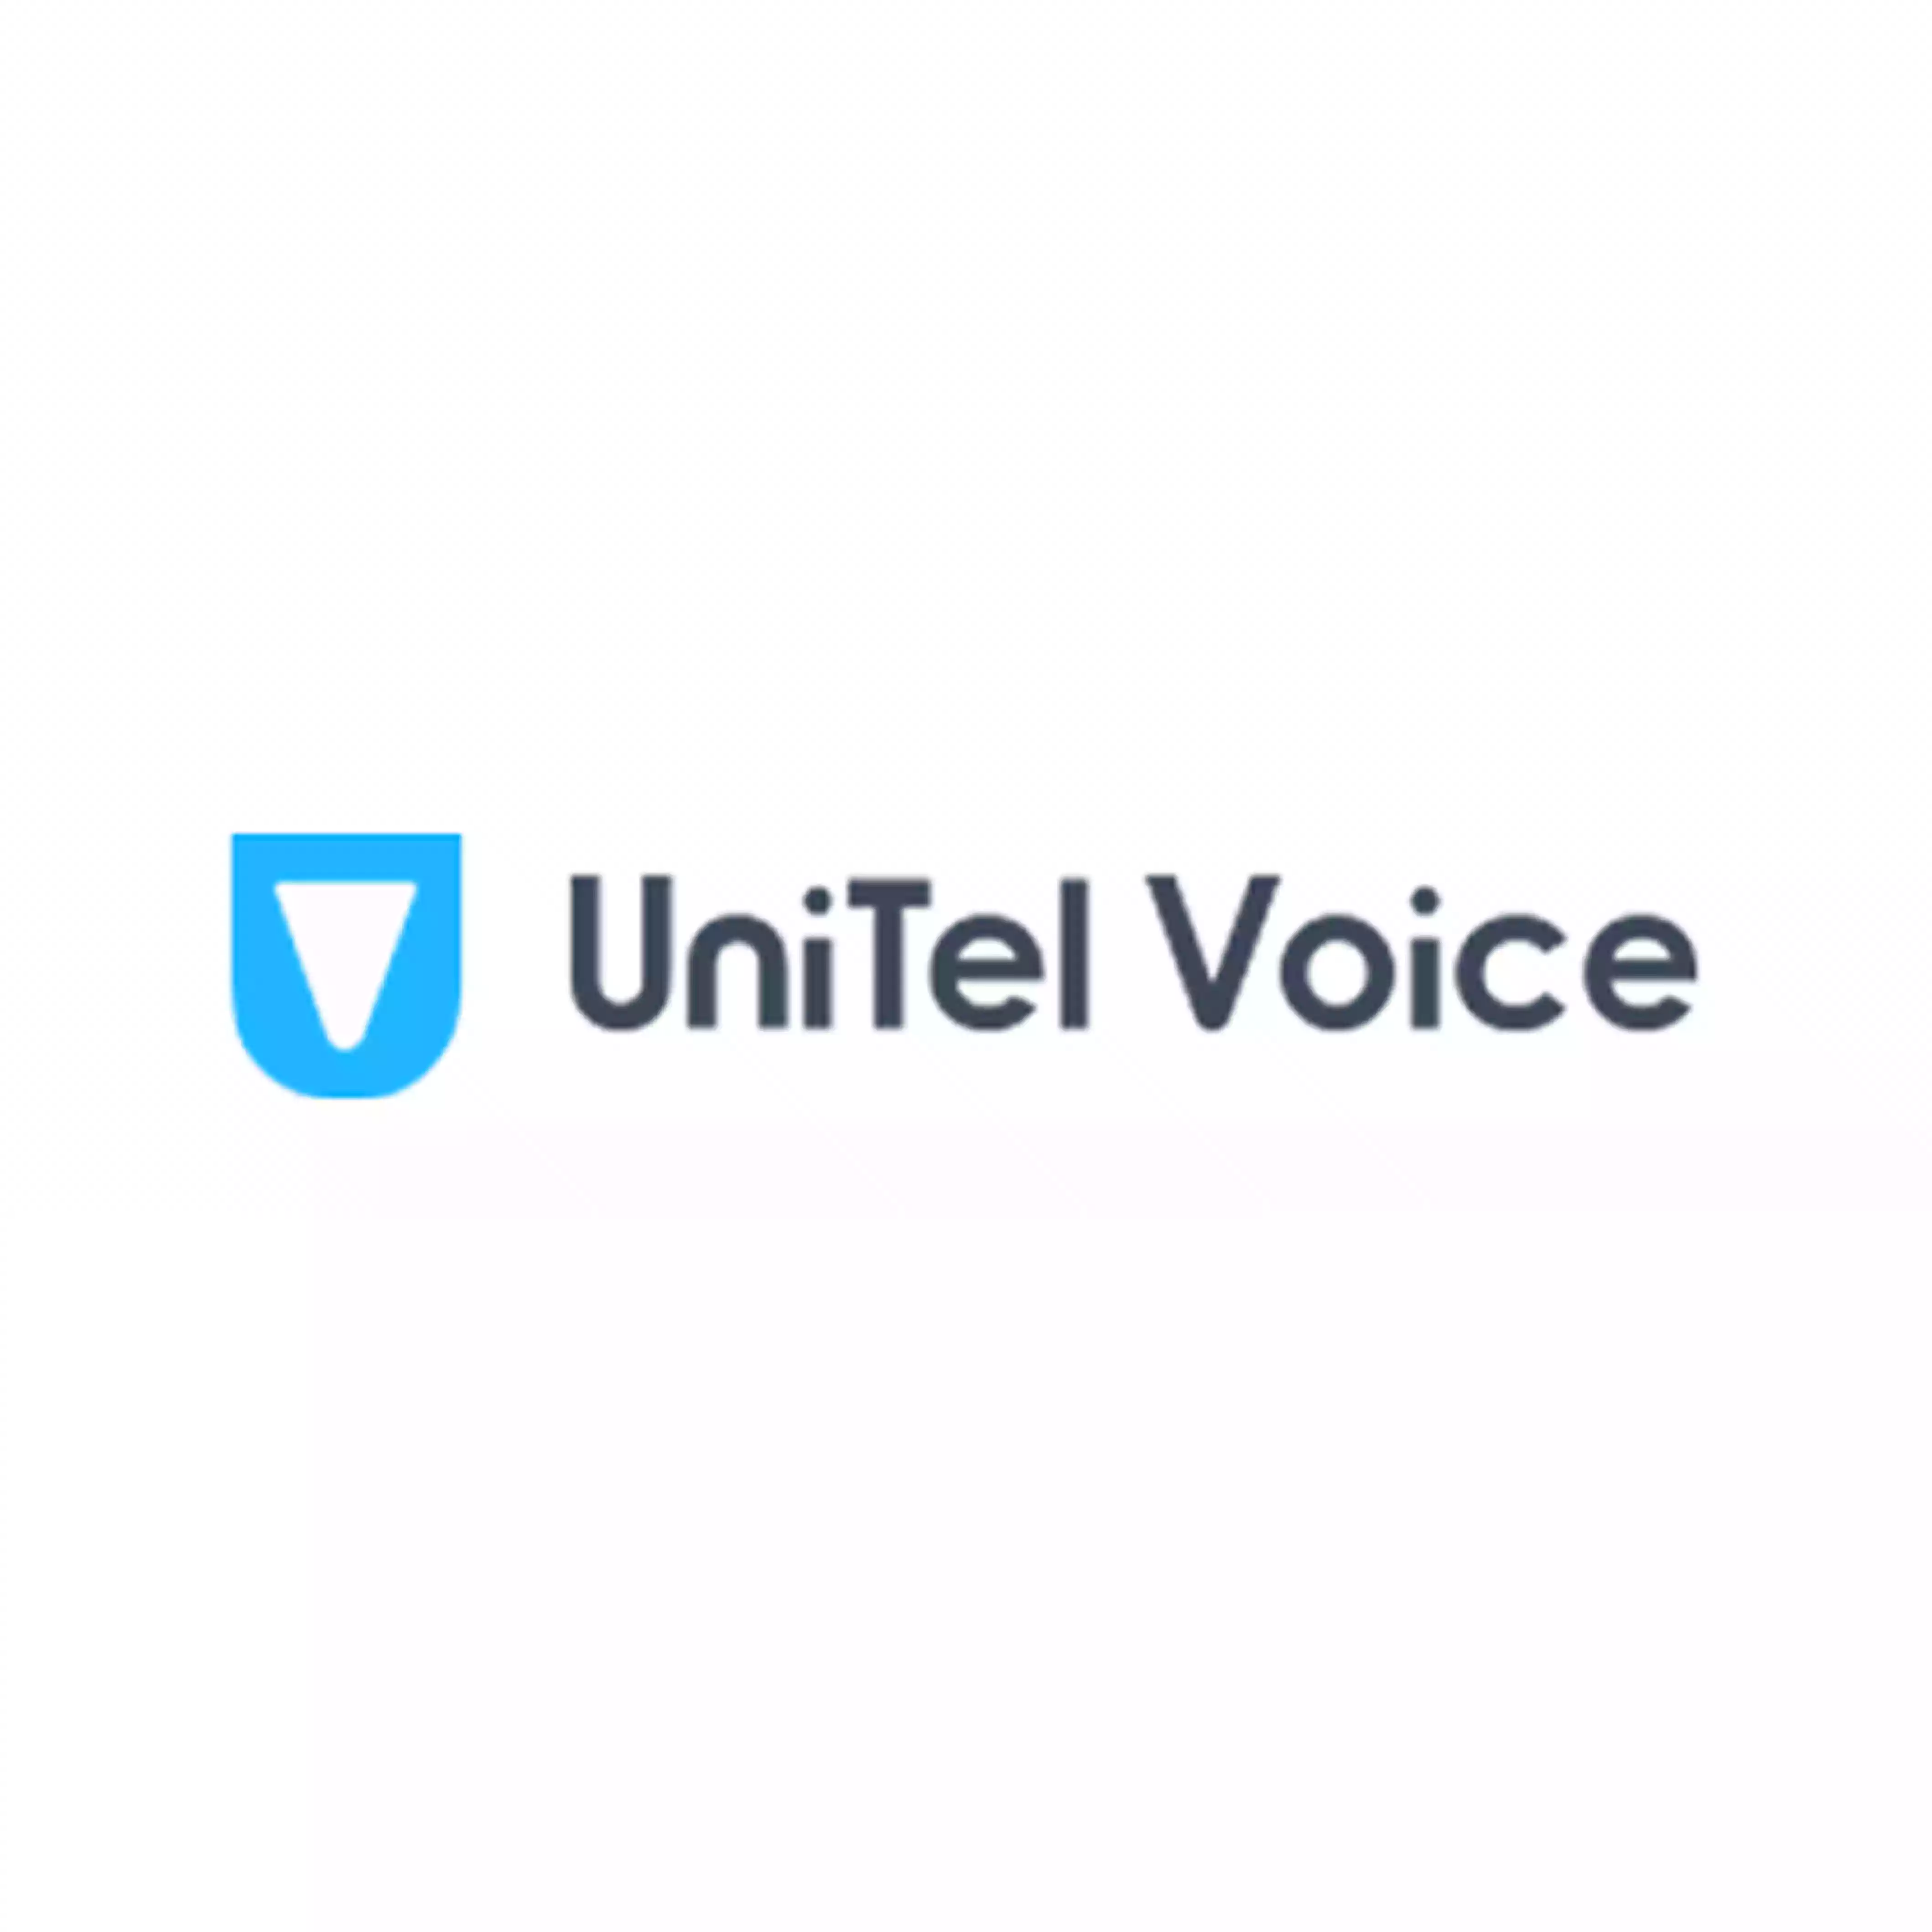 UniTel Voice coupon codes